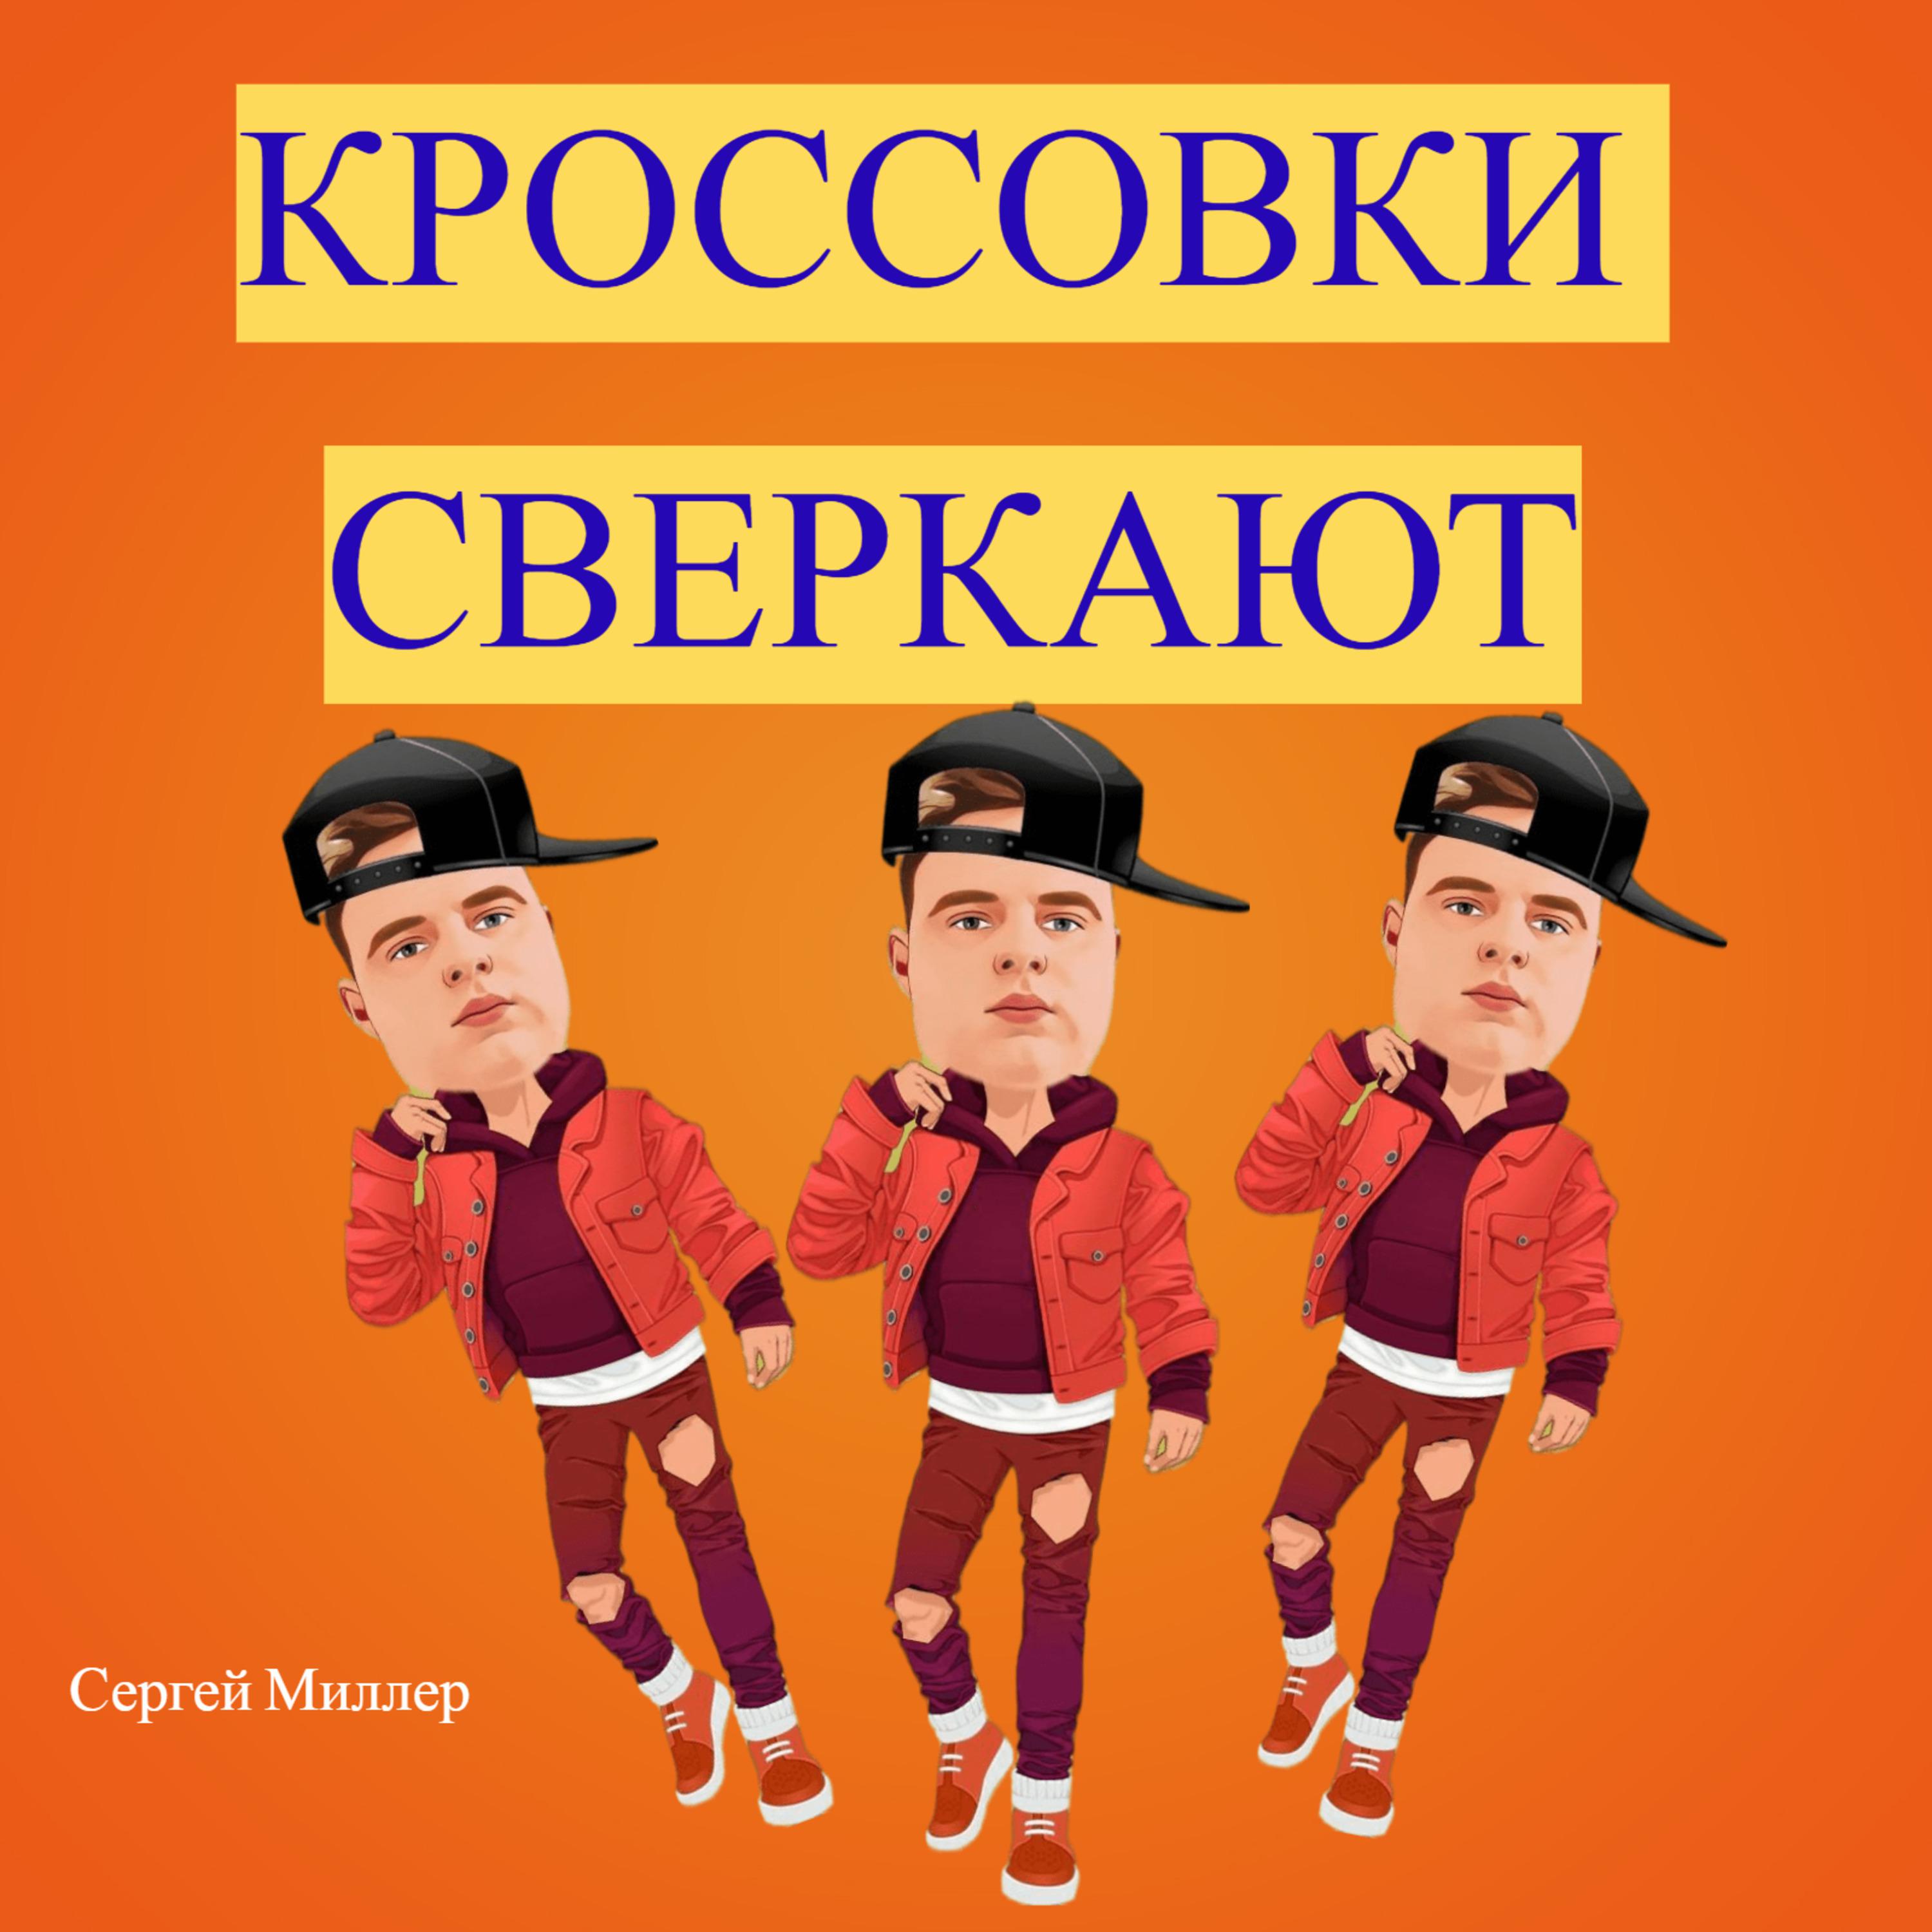 Постер альбома Кроссовки сверкают